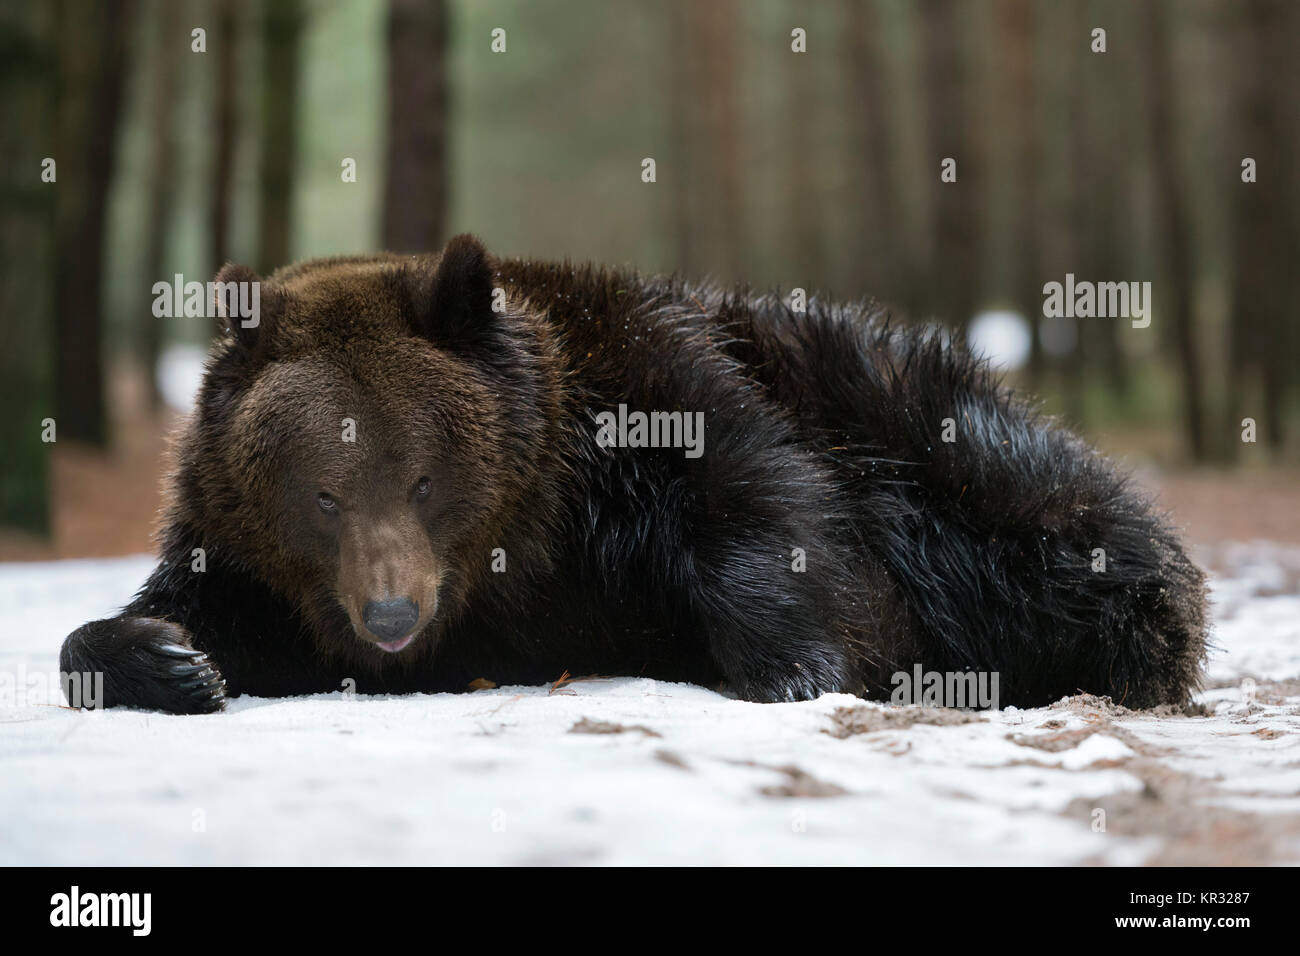 Unione orso bruno ( Ursus arctos ), giovane adolescente, giacente sul terreno, giocando con un po' di neve, sembra divertente, l'Europa. Foto Stock